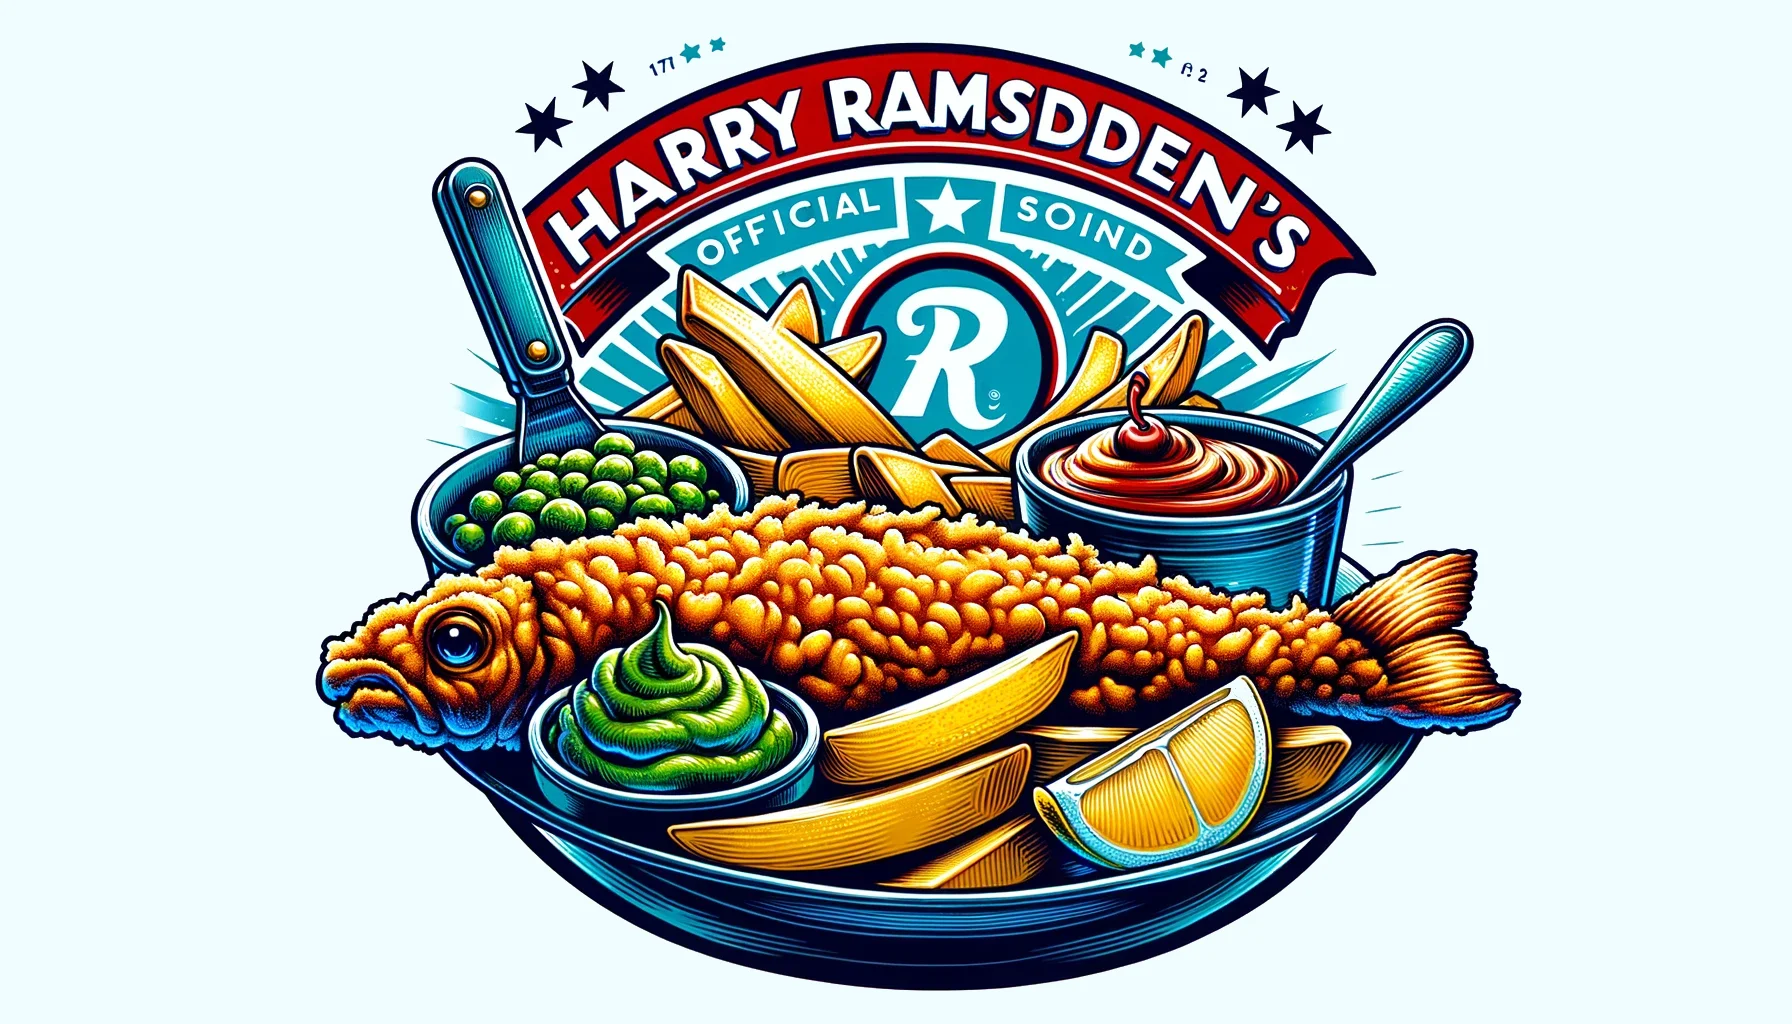 Harry Ramsden's menu prices